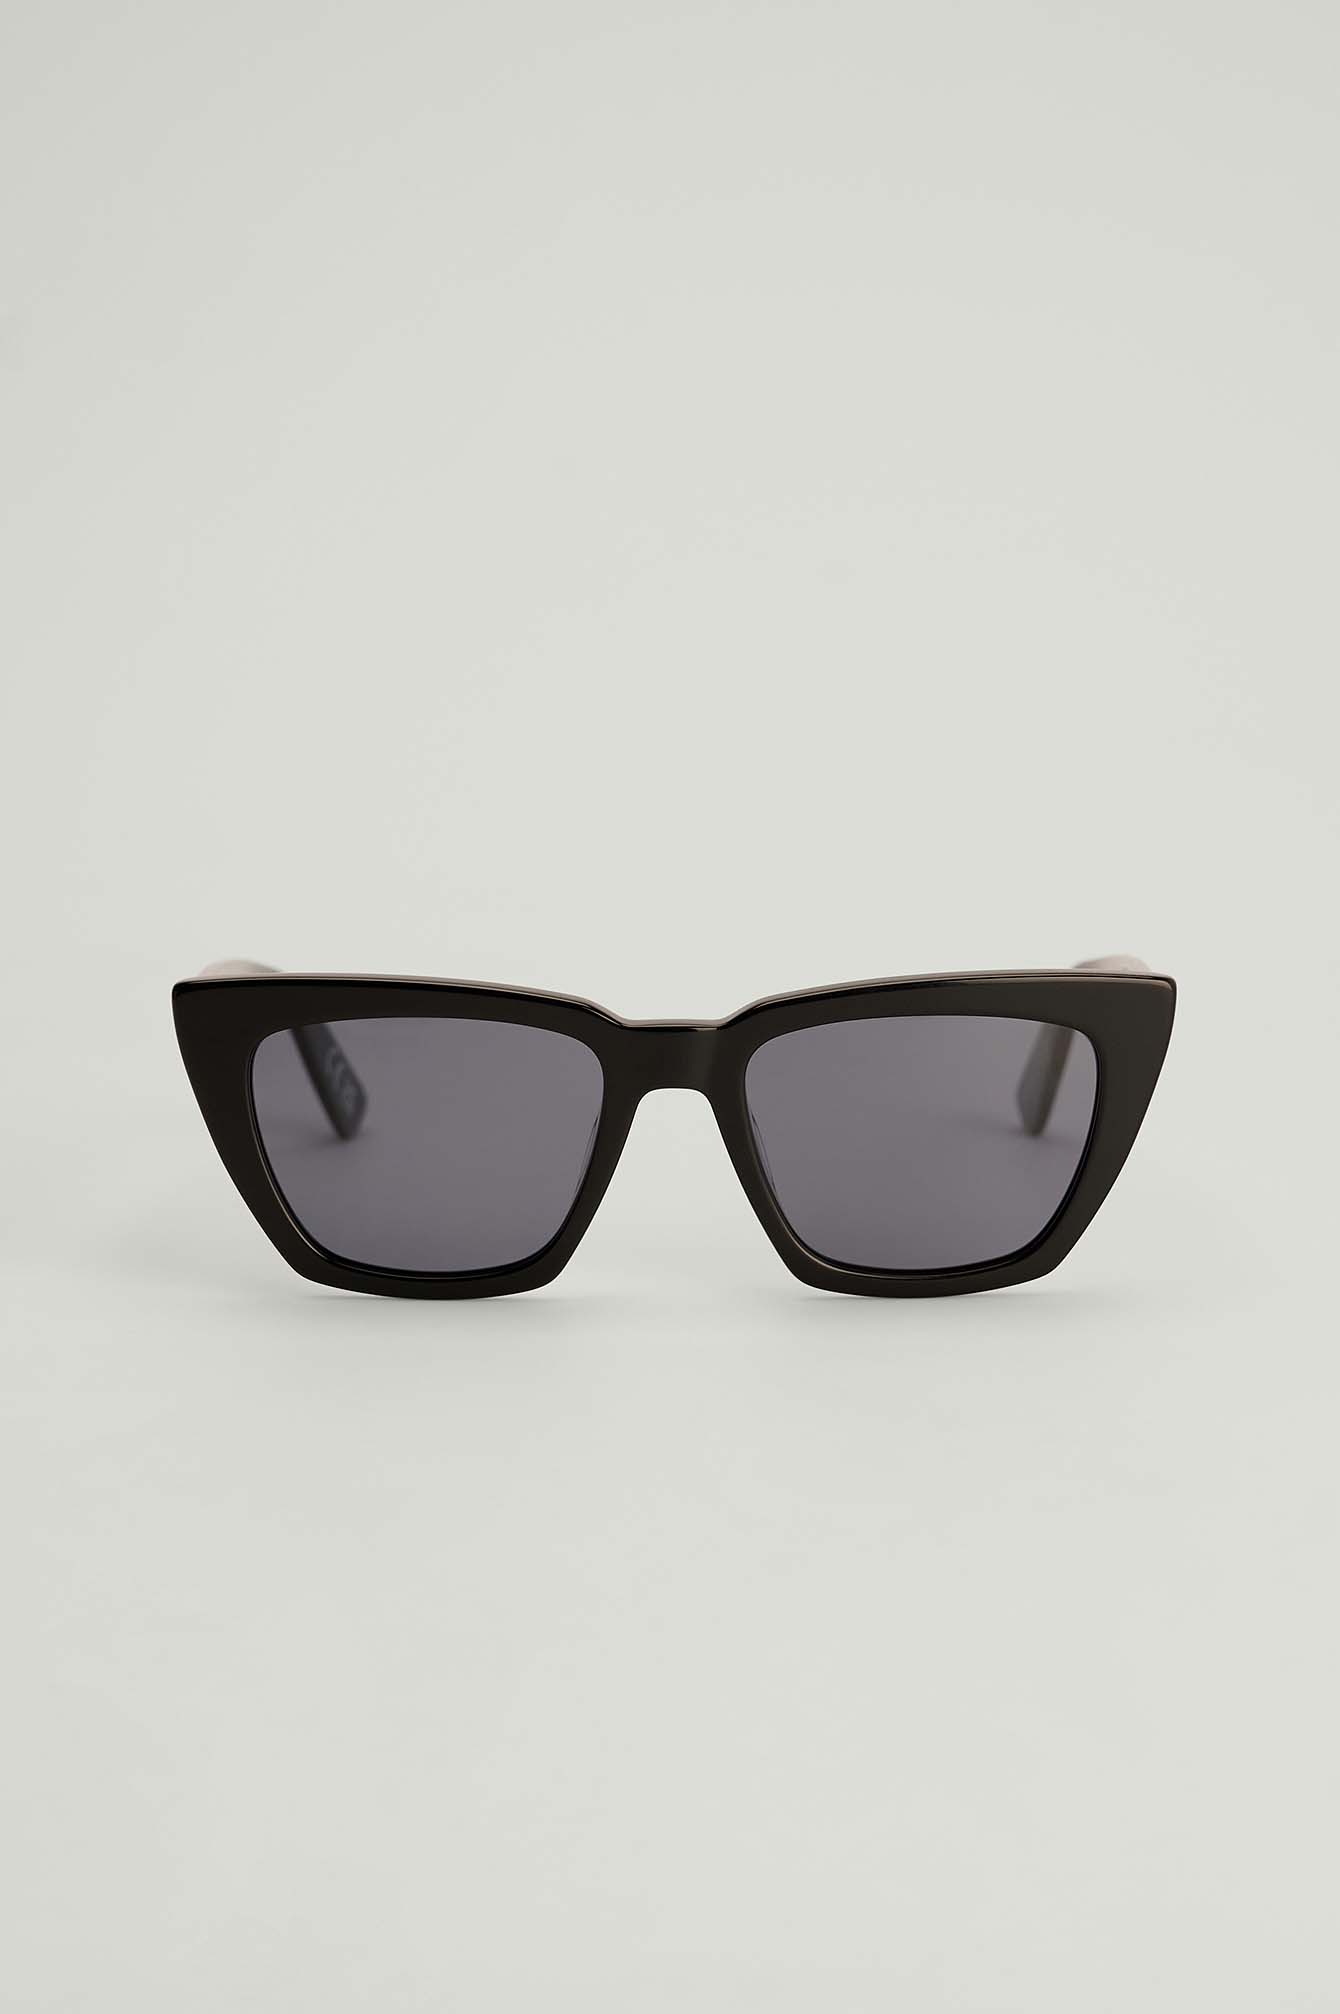 Accessoires Zonnebrillen Hoekige zonnebrillen Lunettes Hoekige zonnebril zwart-wit prints met een thema casual uitstraling 